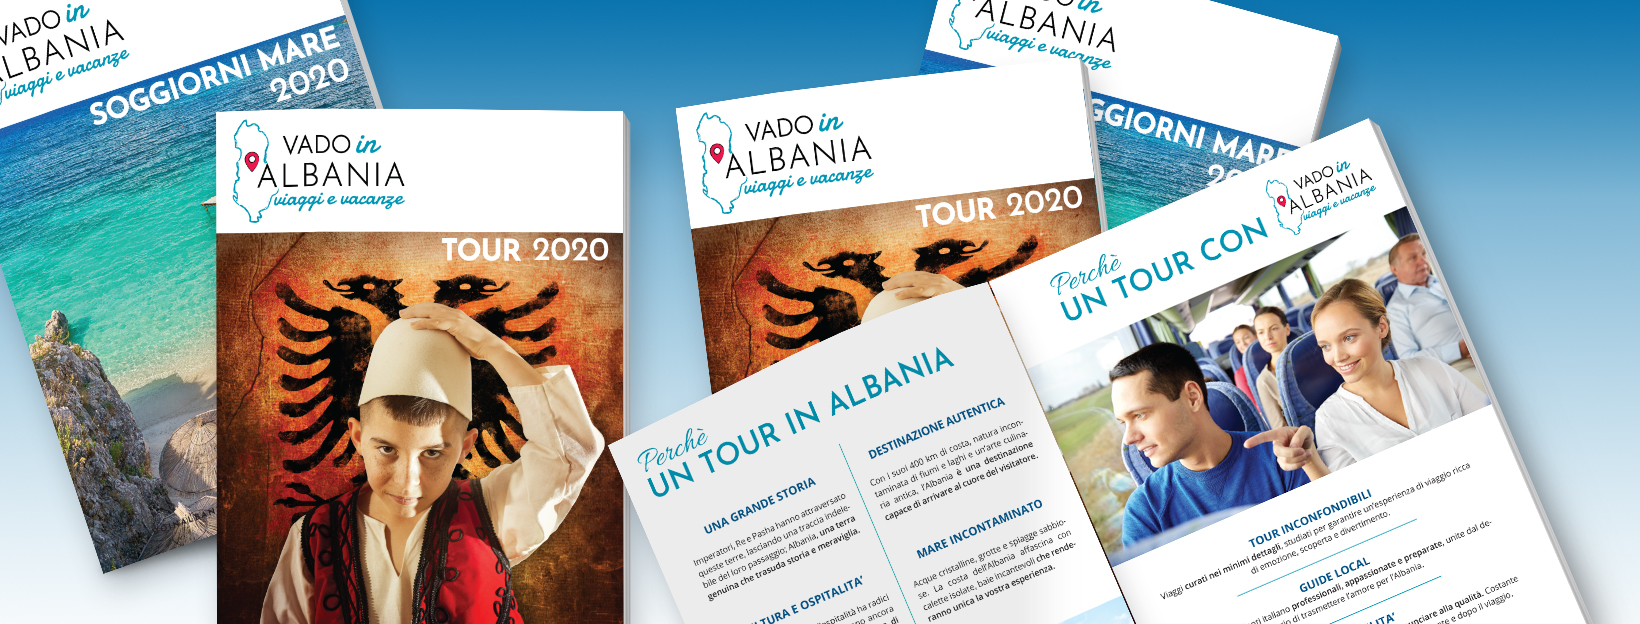 Albania cataloghi tour e soggiorni mare 2020